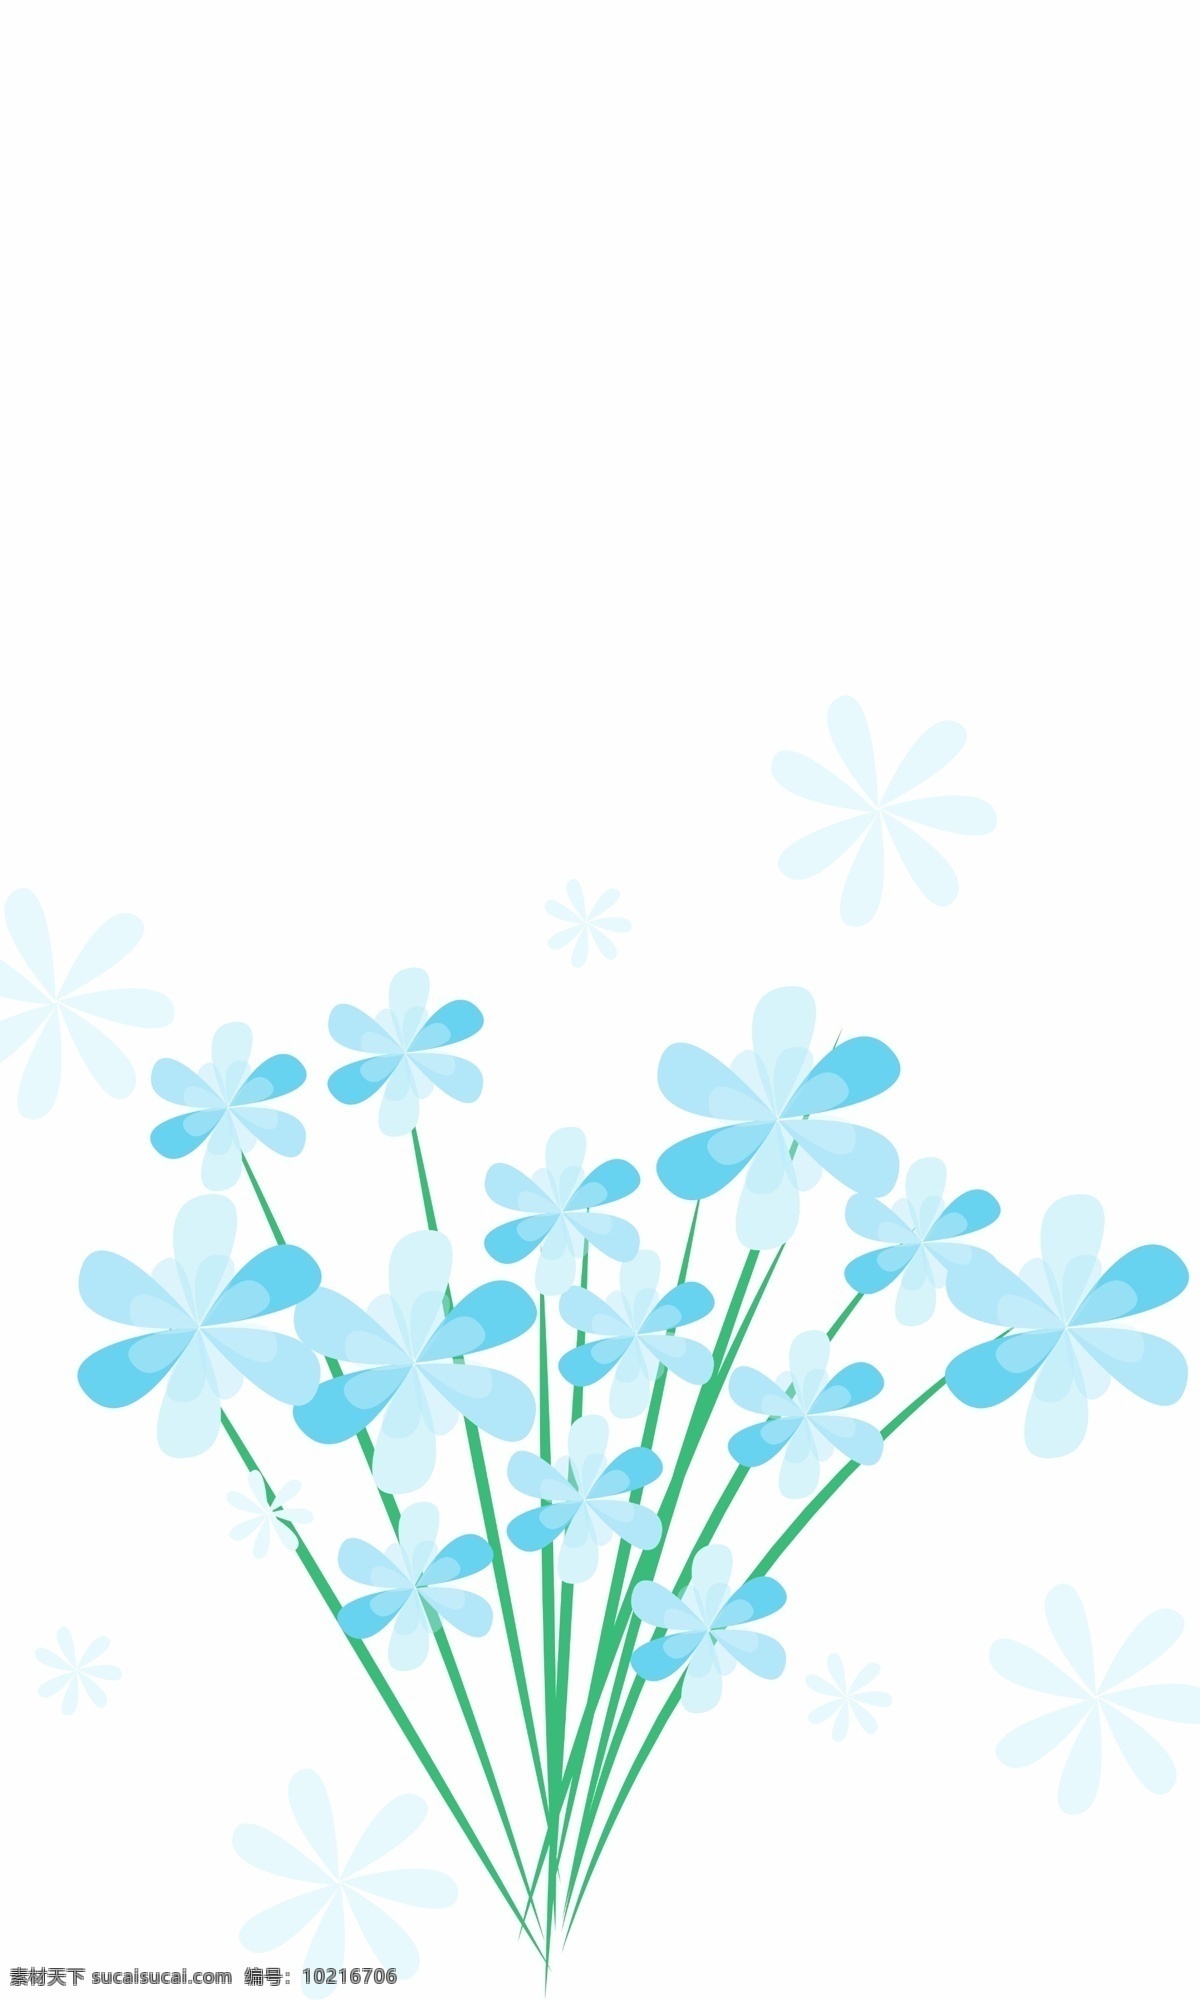 卡通 蓝色 简洁 花朵 背景 手机壳 简约 包装 电子 手机 装饰 剪纸风格 电子机械包装